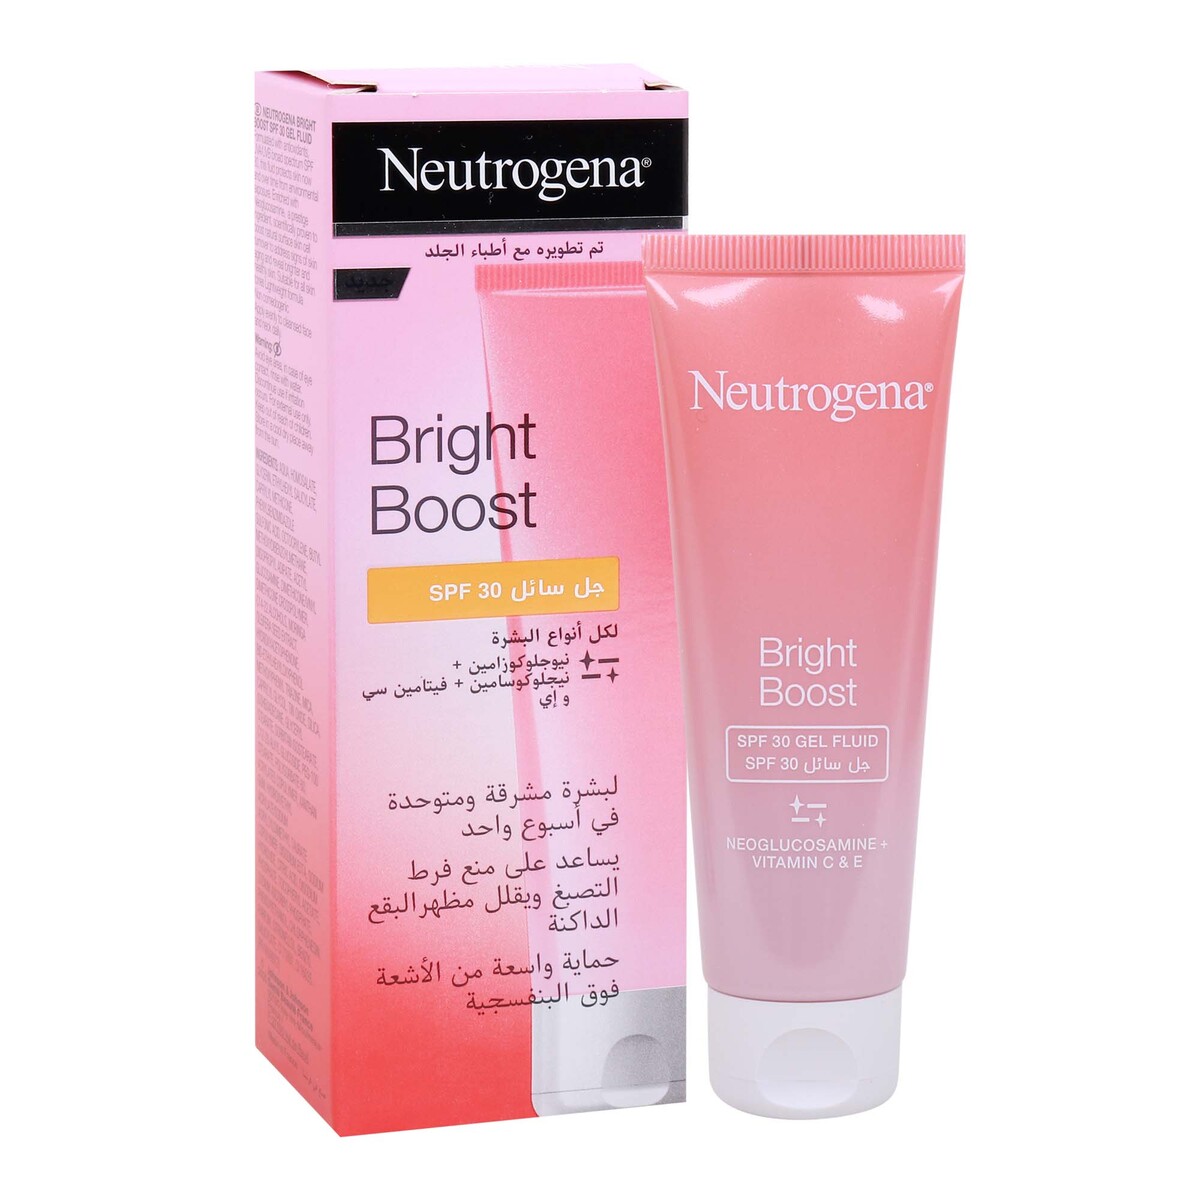 Neutrogena Bright Boost SPF 30 Gel Fluid, 50 ml